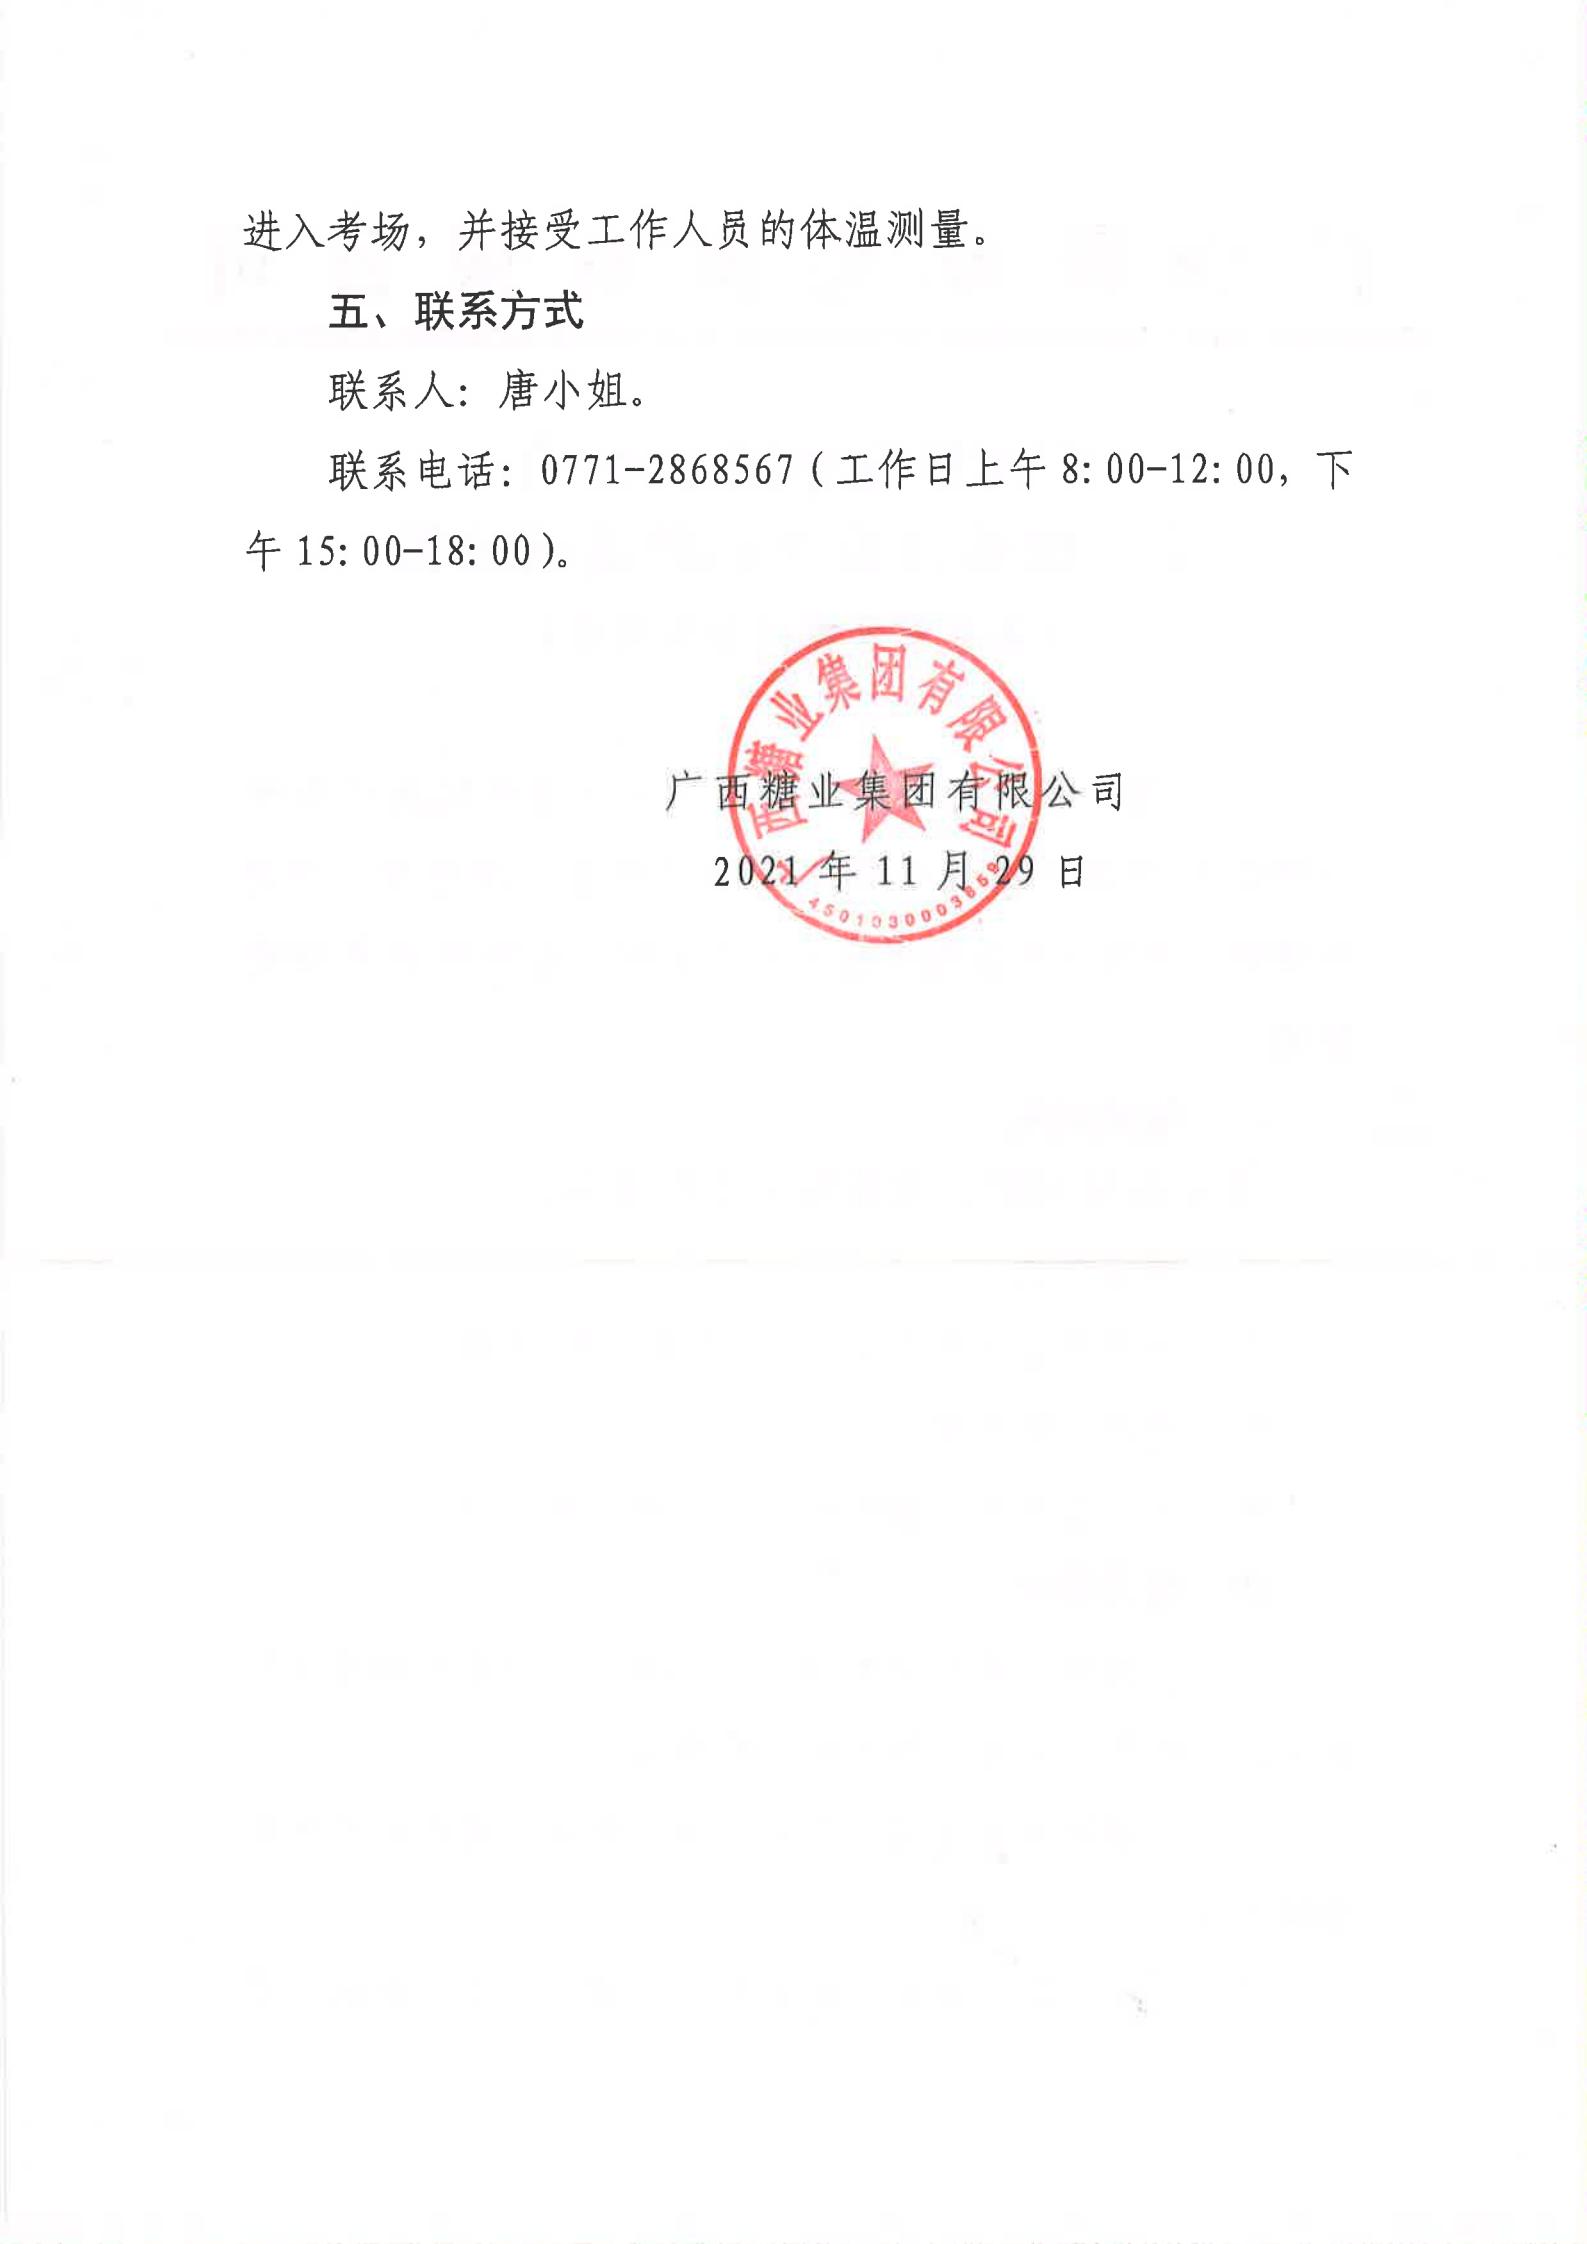 广西糖业集团2021年第二批社会公开招聘有关岗位笔试公告（法务审计部副部长）_01.jpg